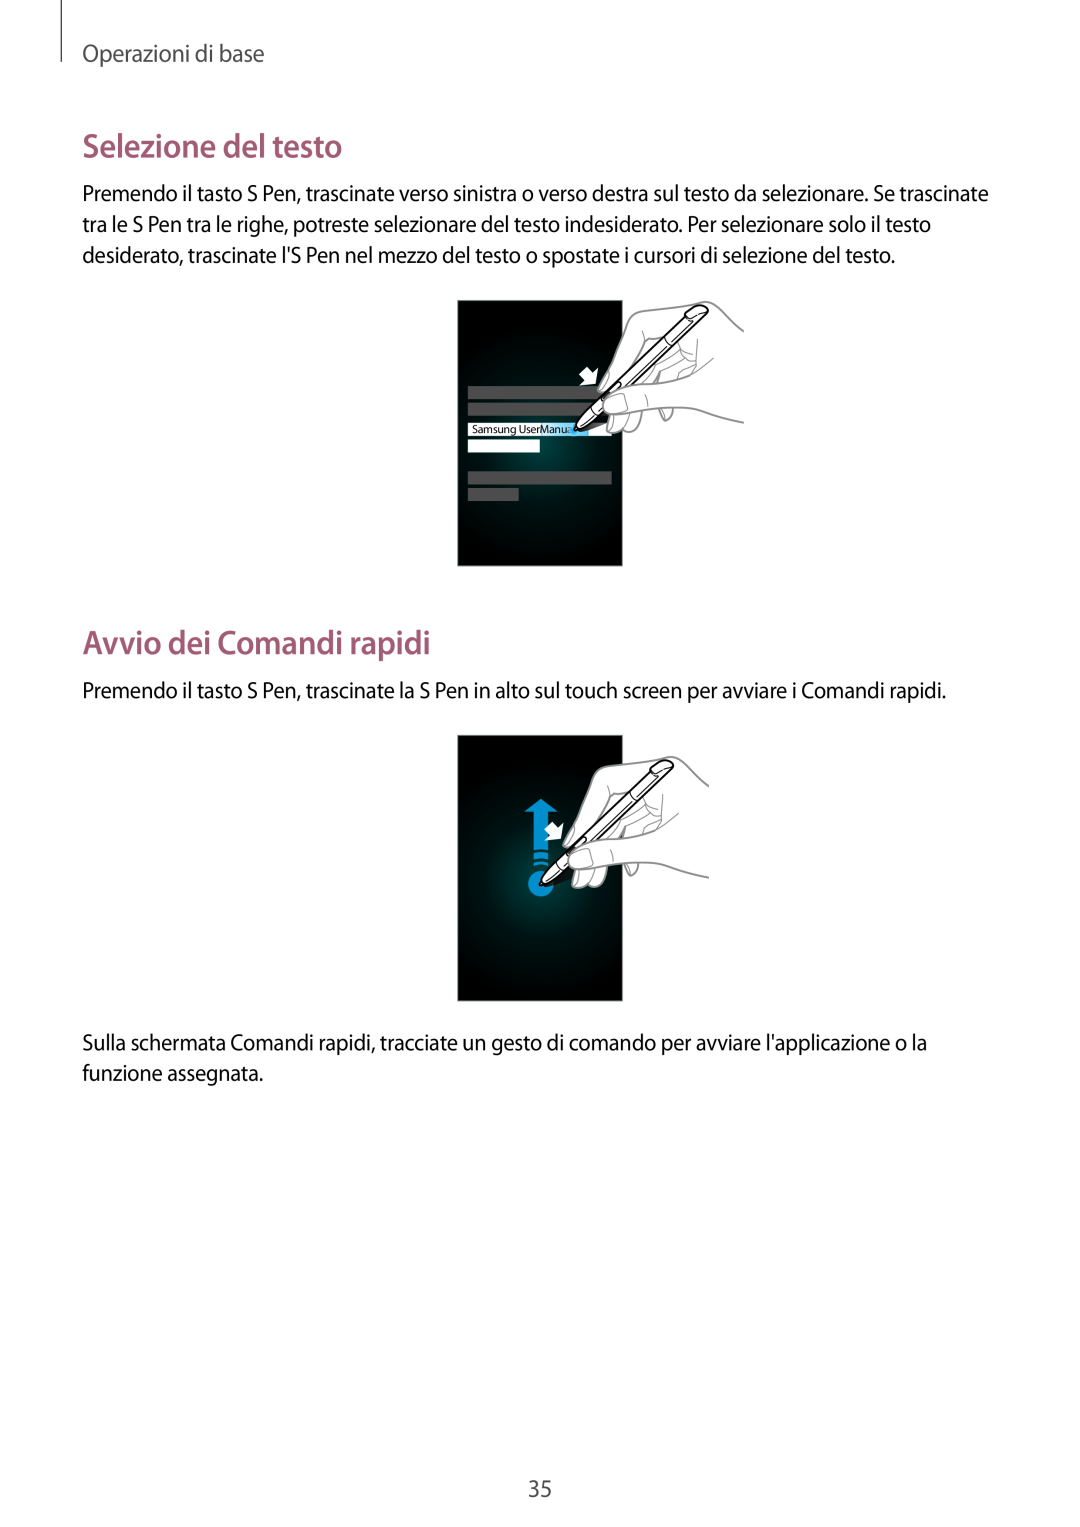 Samsung GT-N7100VSDHUI manual Selezione del testo, Avvio dei Comandi rapidi, Operazioni di base, Samsung UserManual 